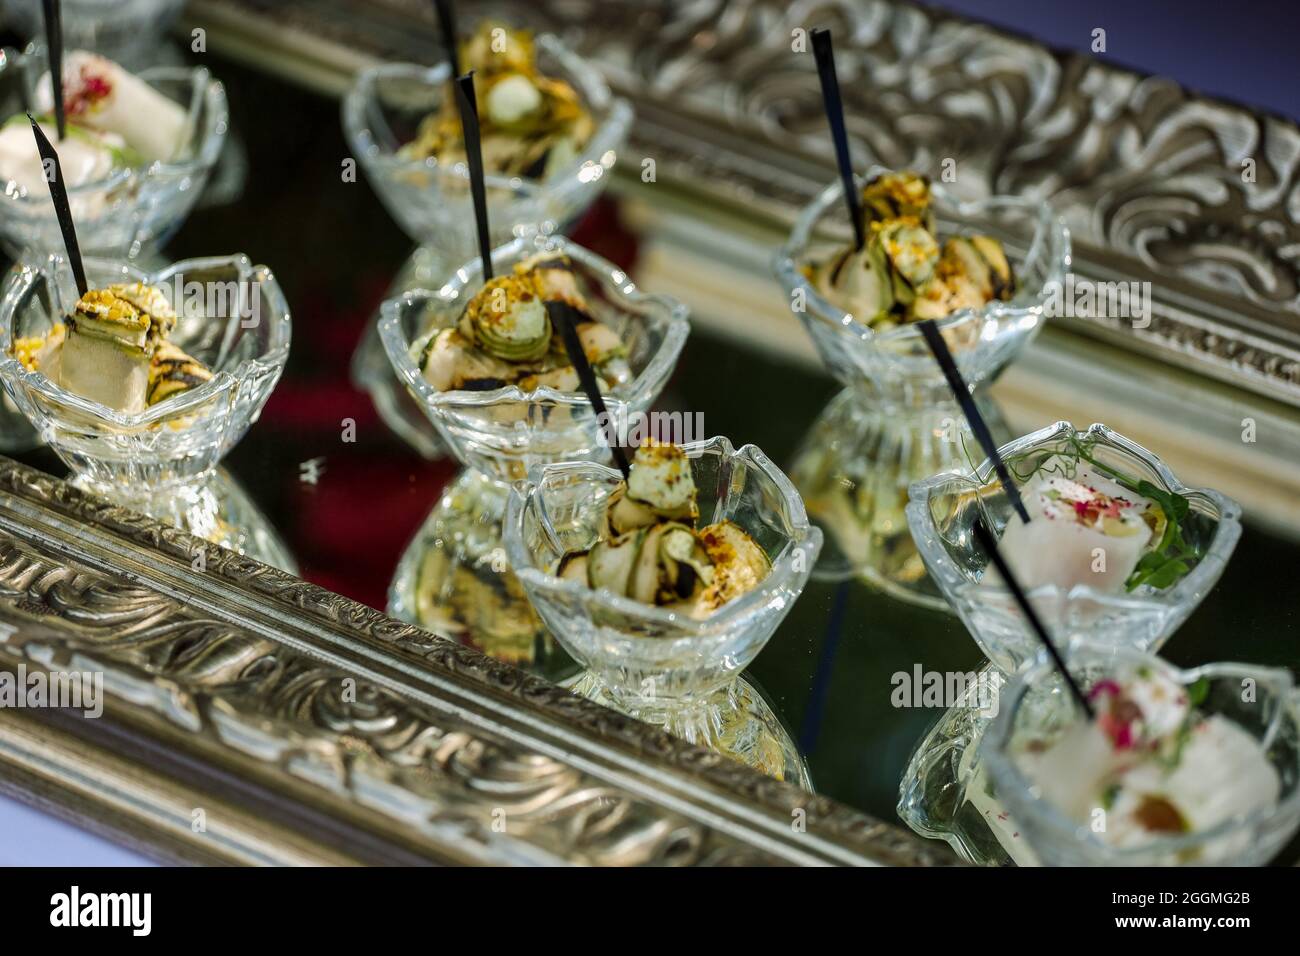 Antipasti, catering, spuntini in vetreria sul vassoio d'argento Foto di alta qualità Foto Stock